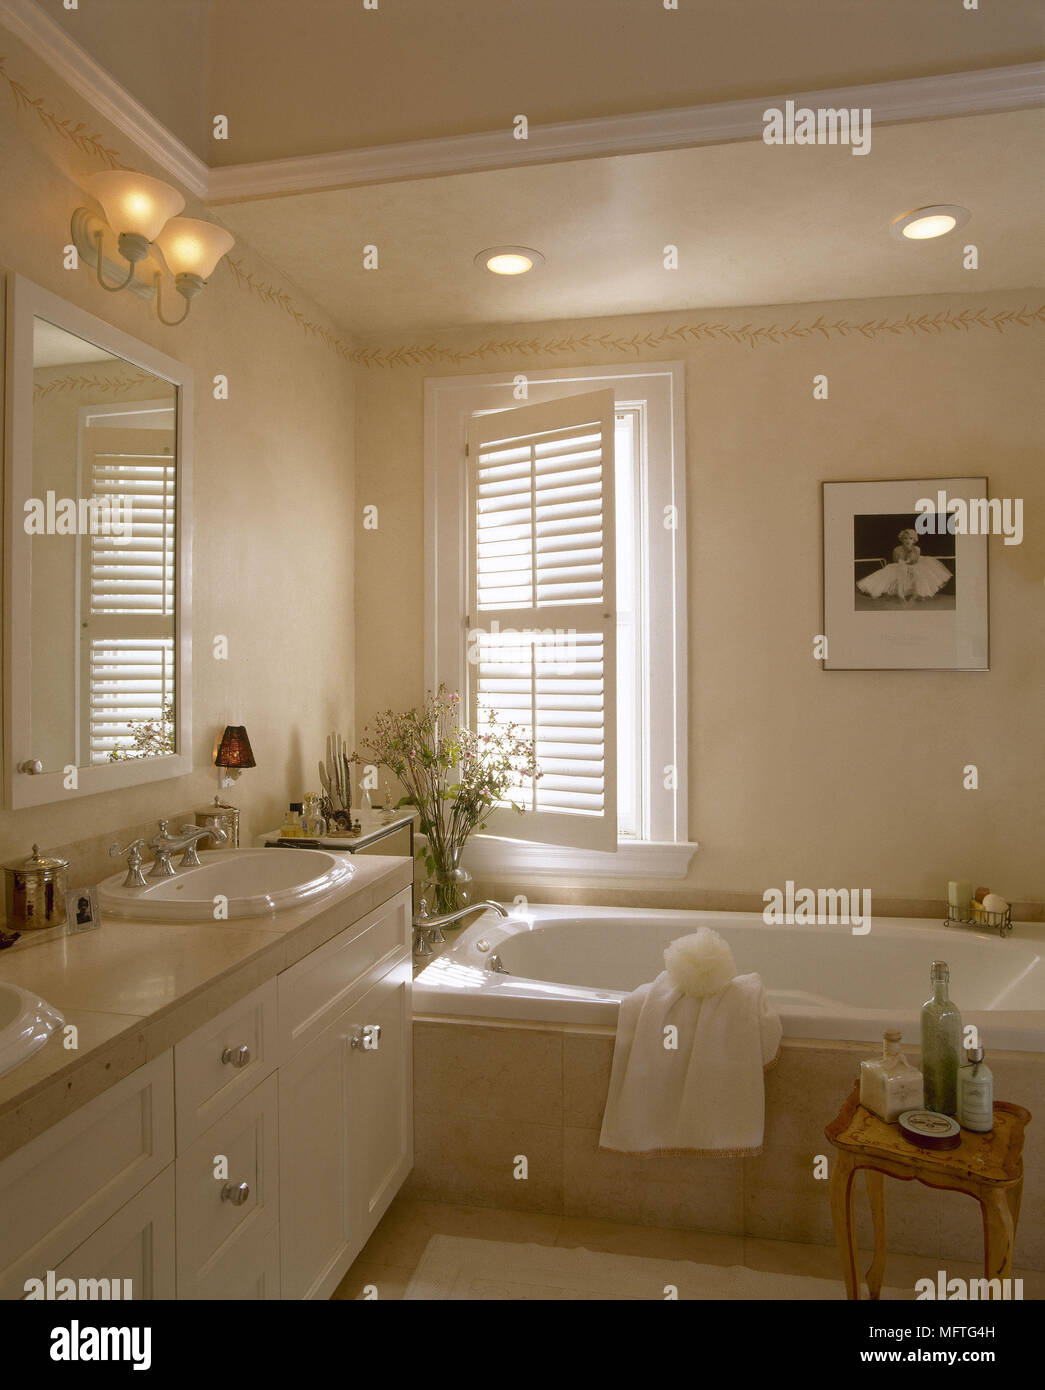 Modernes Badezimmer Badewanne/Waschbecken in Einheit Fensterläden Interieur Bäder Bäder Waschbecken warmen Farben Speicher Stockfoto